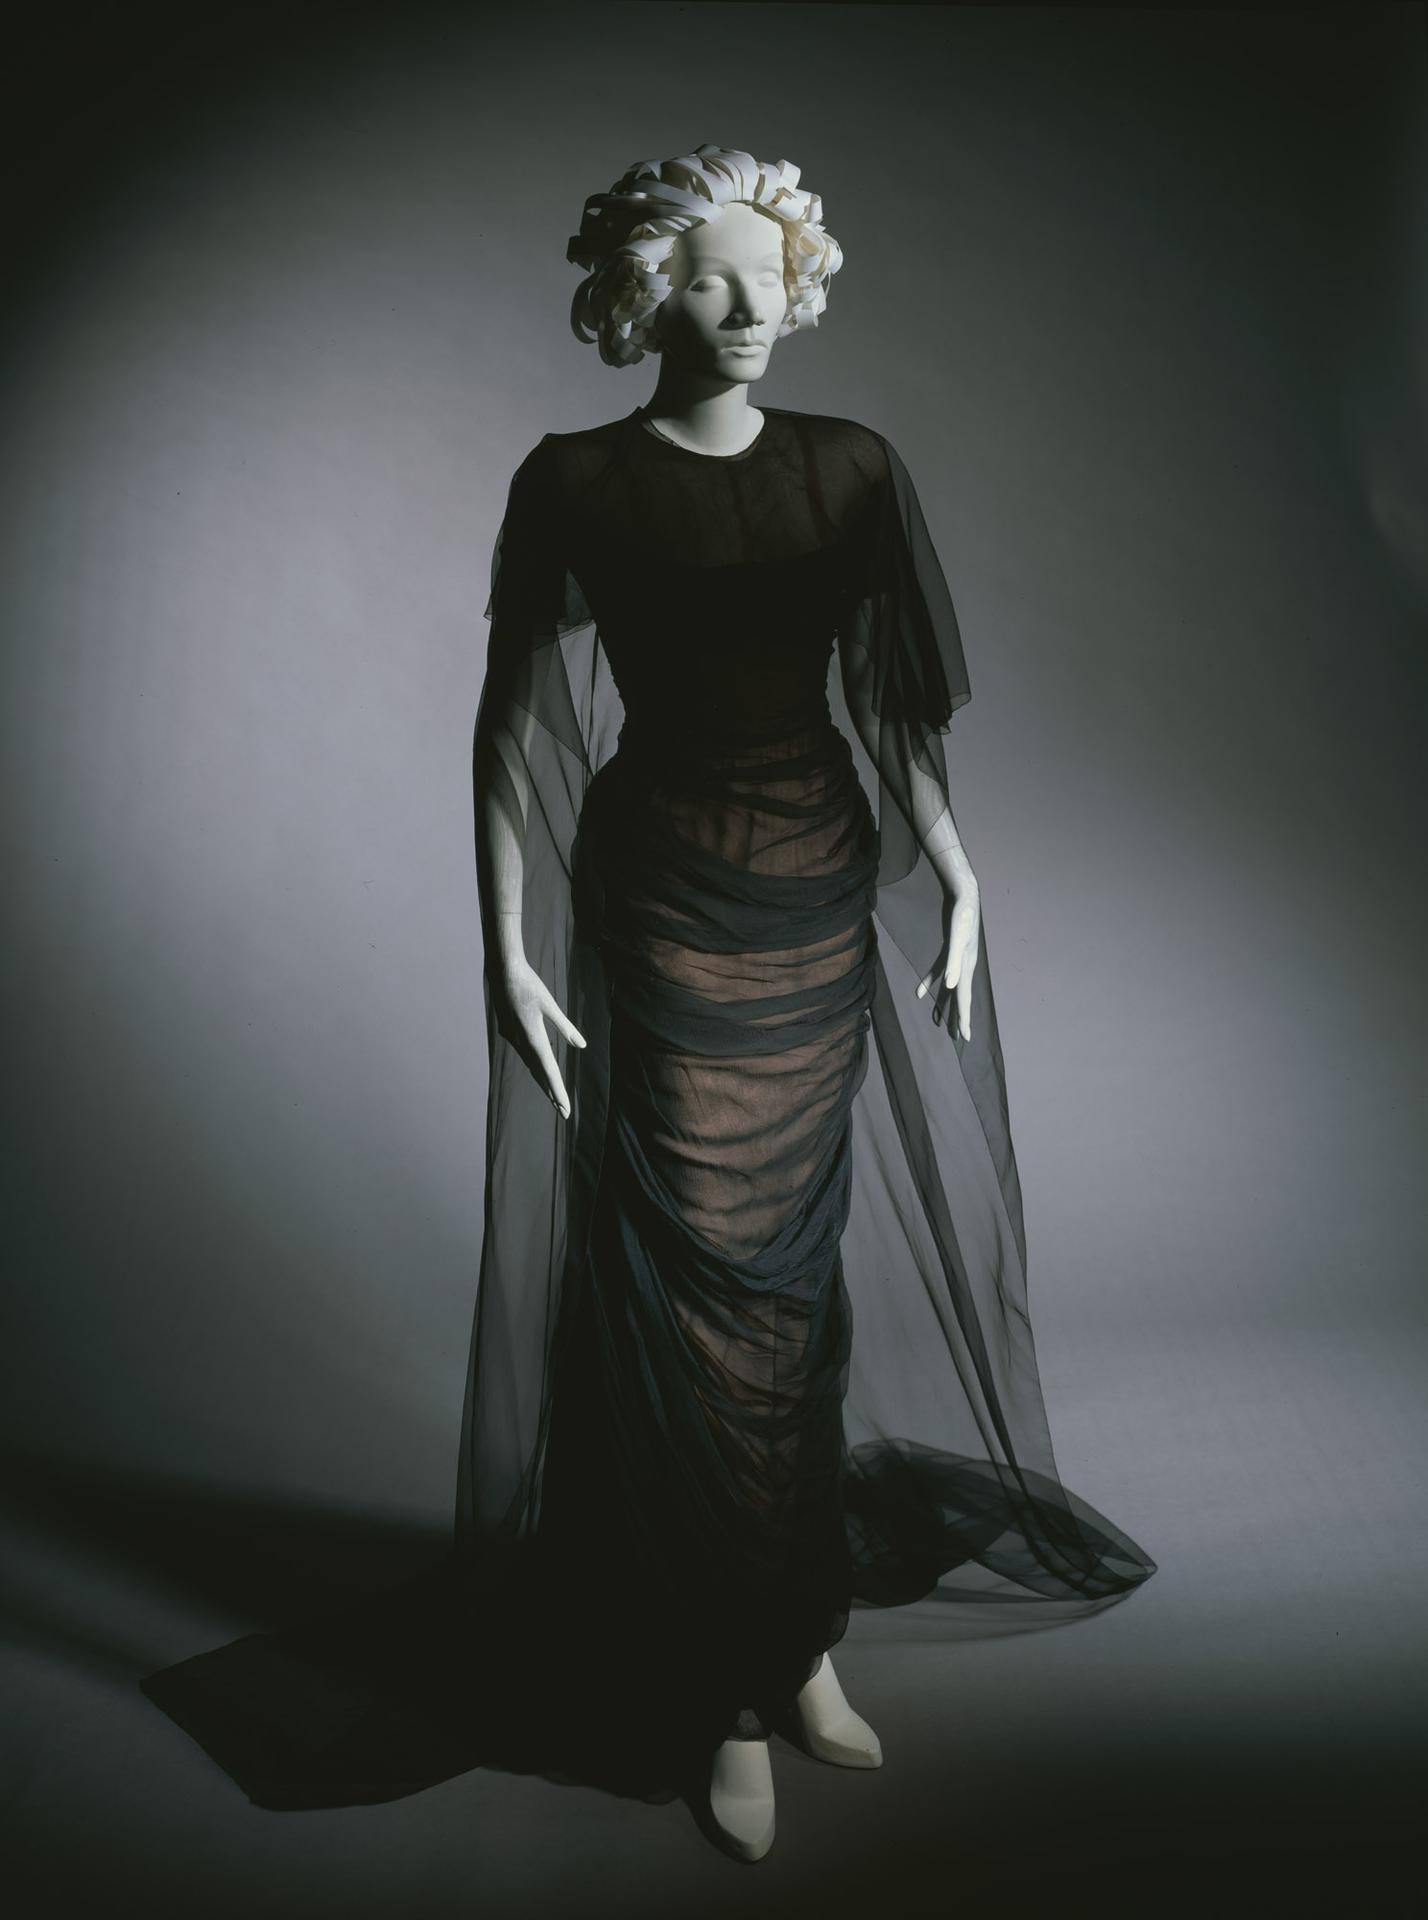 Kinemathek Berlin Marlene Dietrich Details Collection | Deutsche